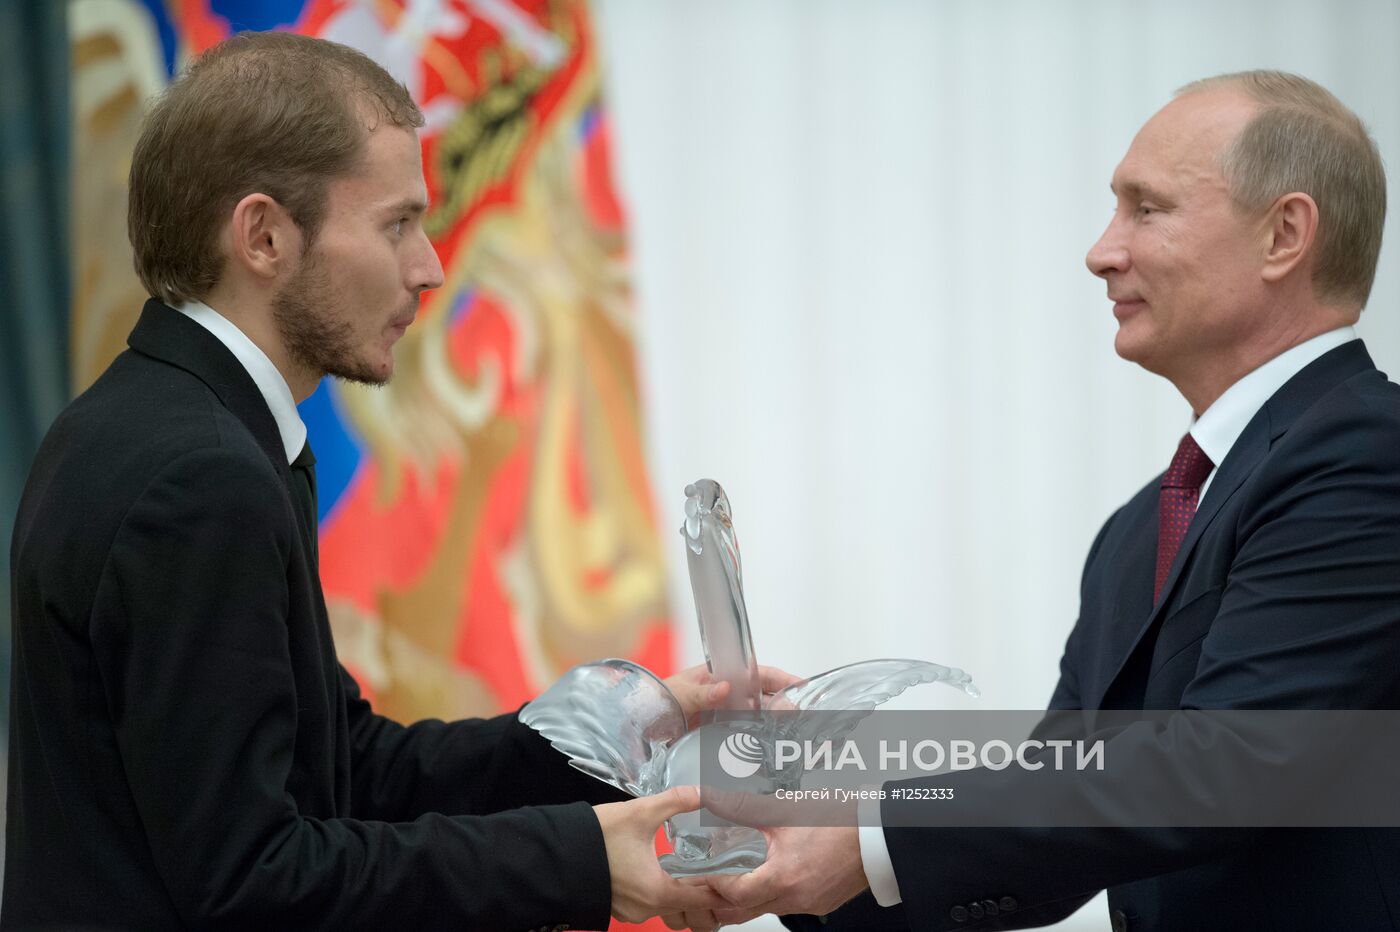 Встреча В.Путина с финалистами конкурса "Учитель года - 2012"